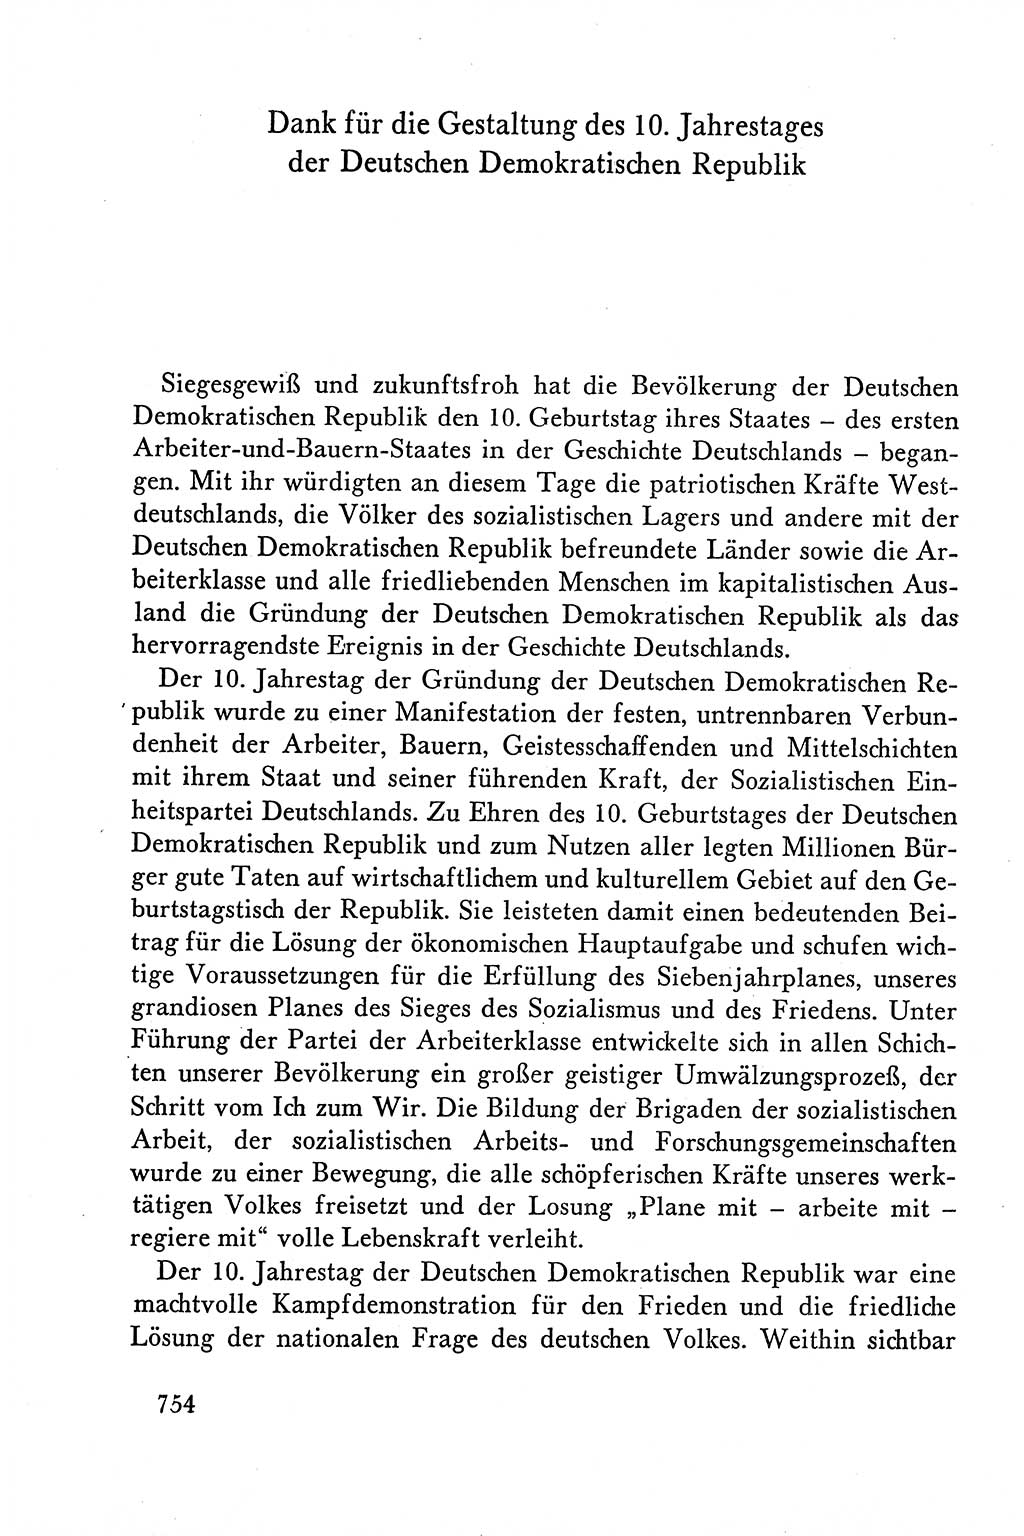 Dokumente der Sozialistischen Einheitspartei Deutschlands (SED) [Deutsche Demokratische Republik (DDR)] 1958-1959, Seite 754 (Dok. SED DDR 1958-1959, S. 754)